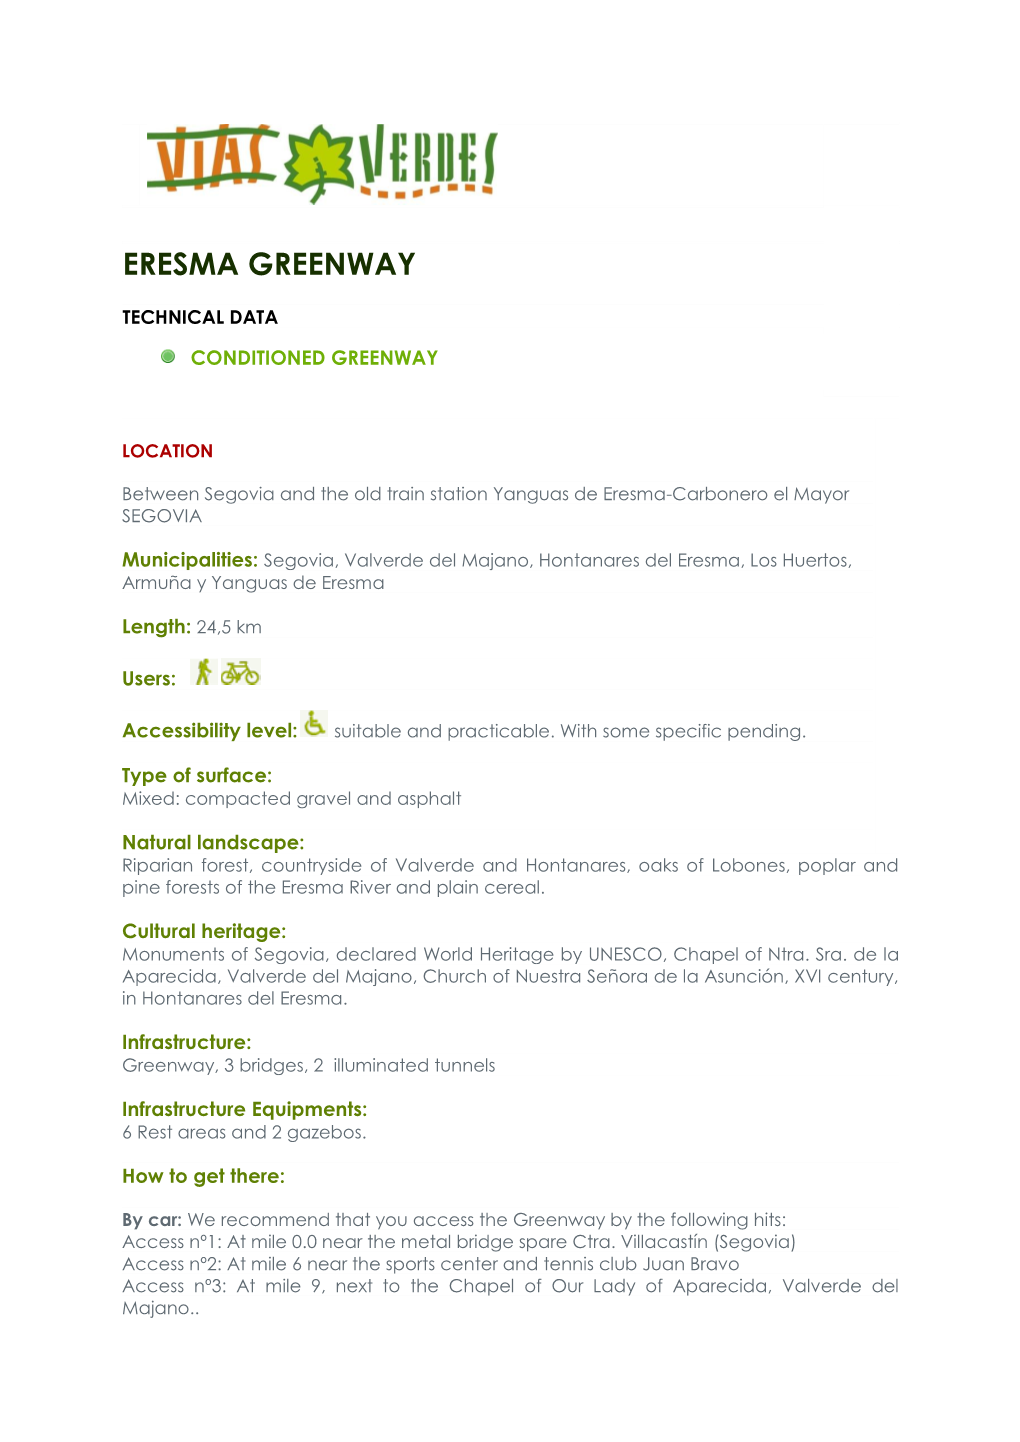 Eresma Greenway